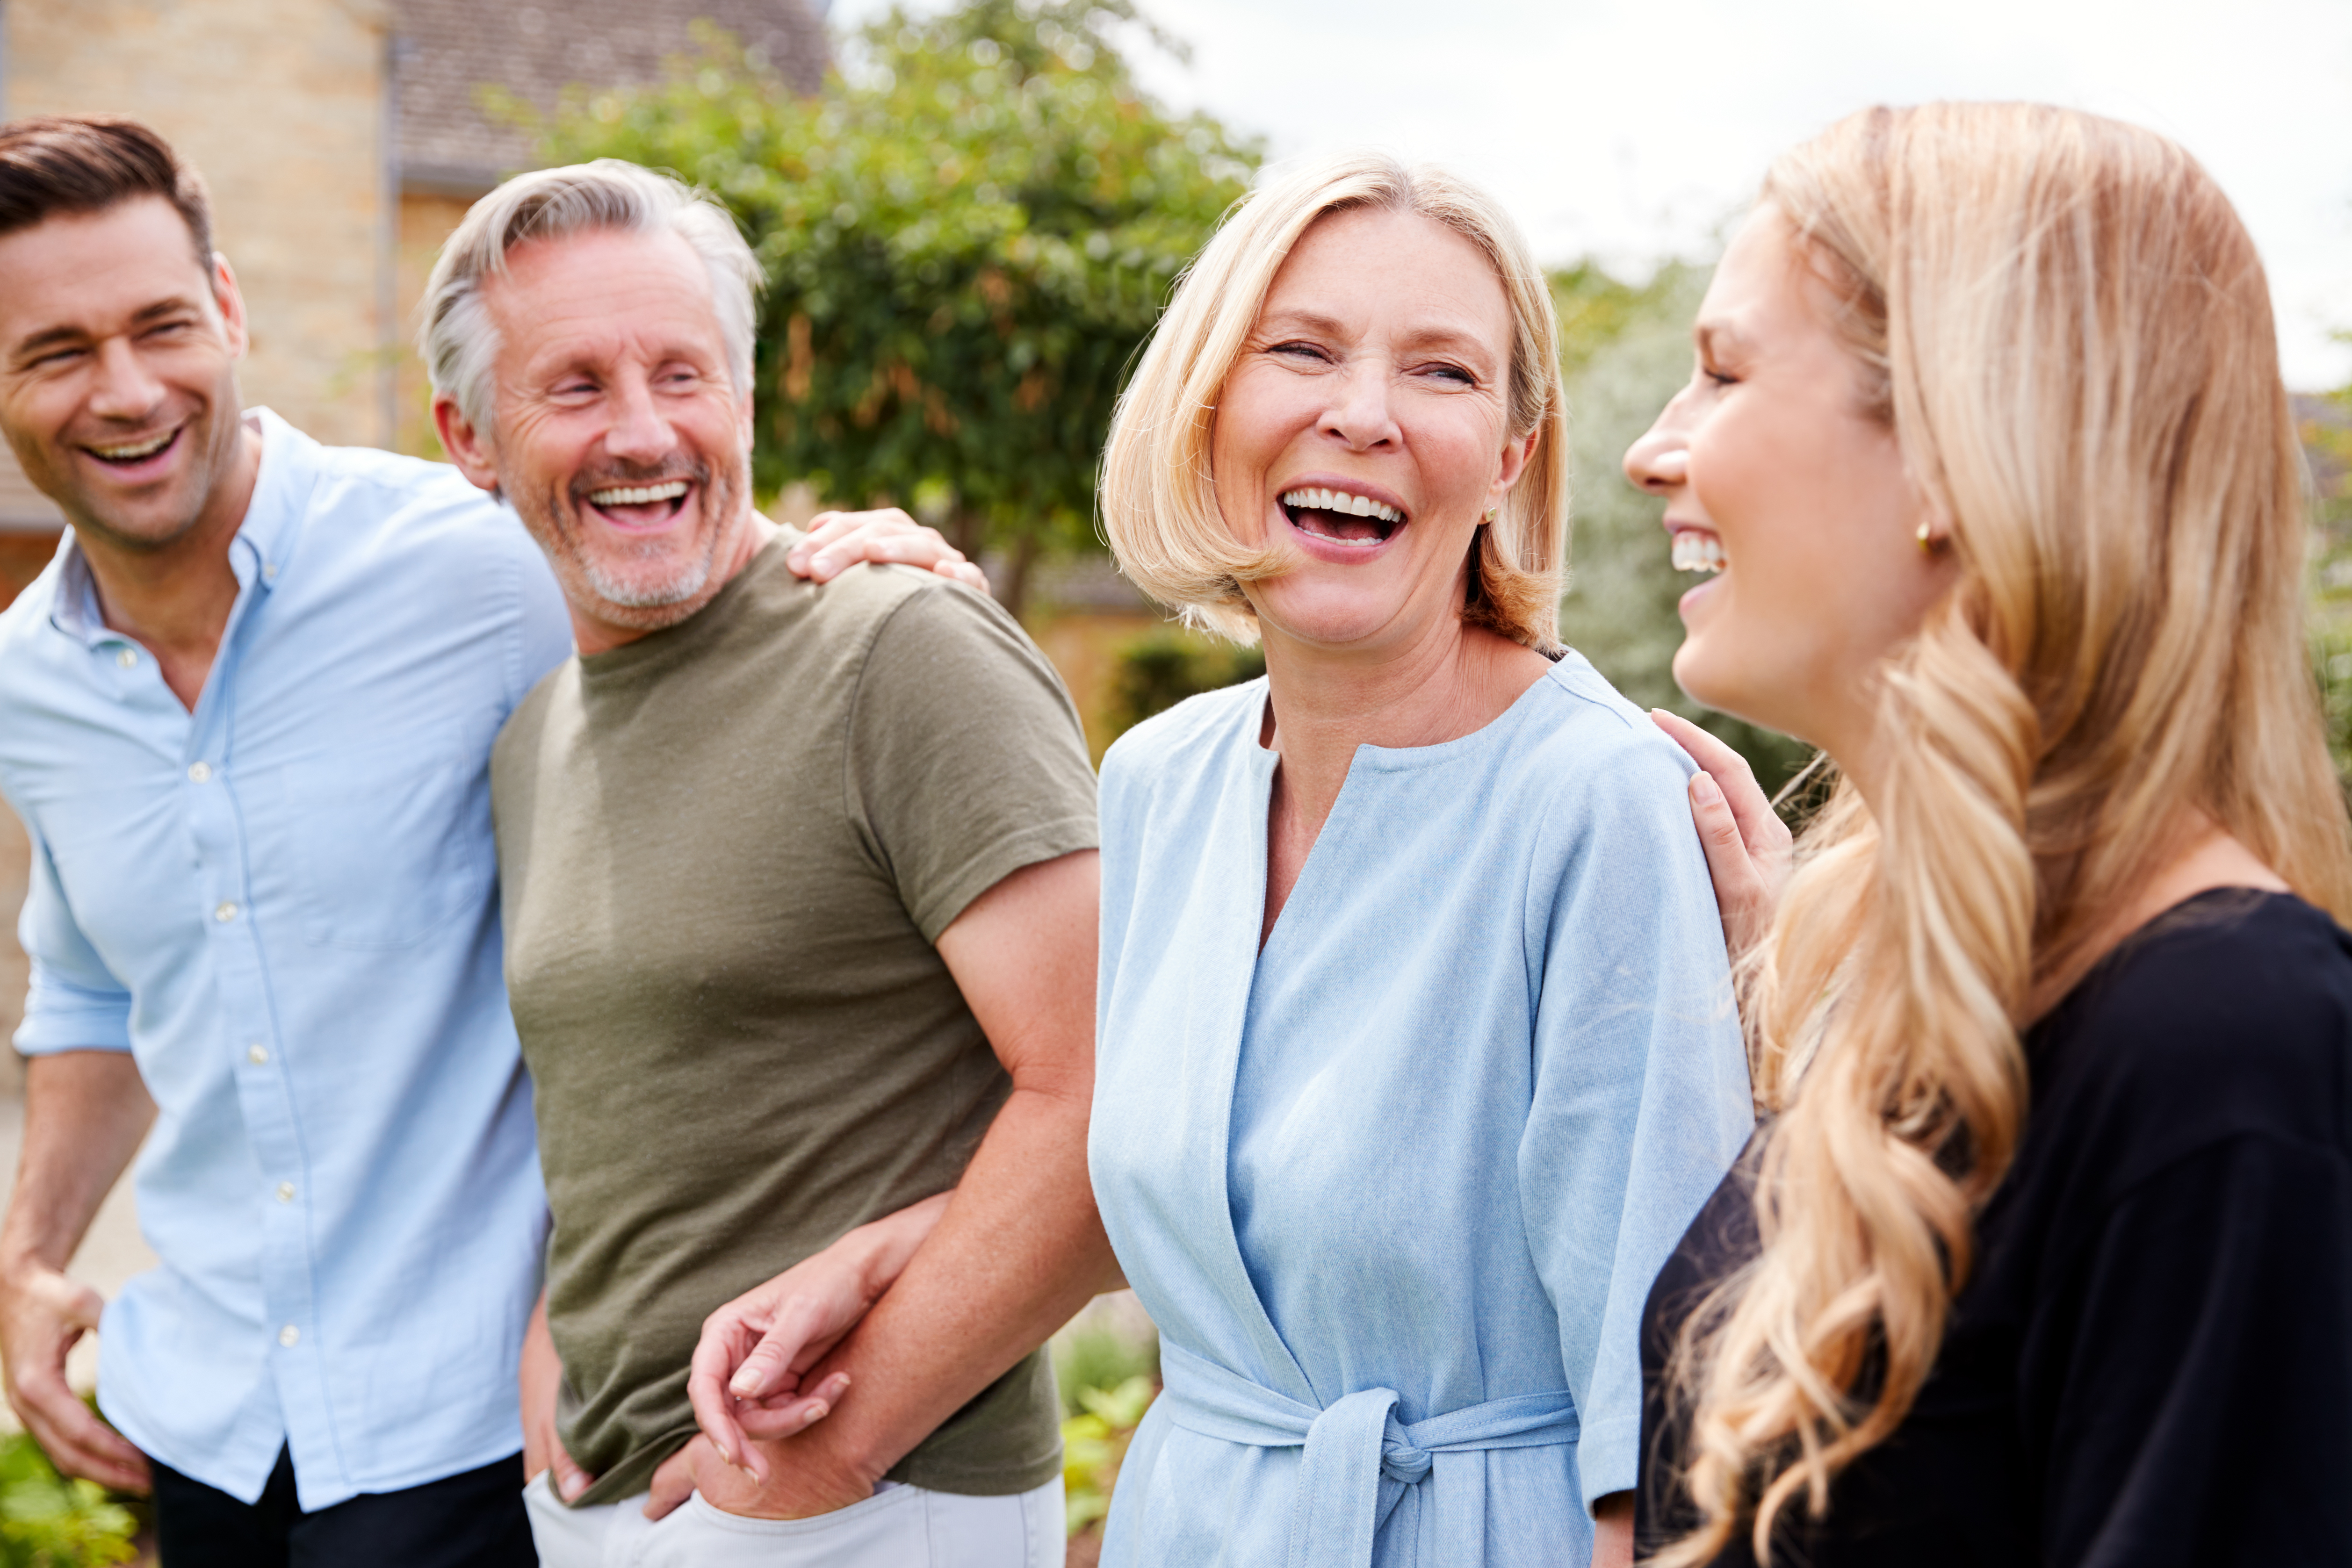 Une famille photographiée en train de sourire | Source : Shutterstock